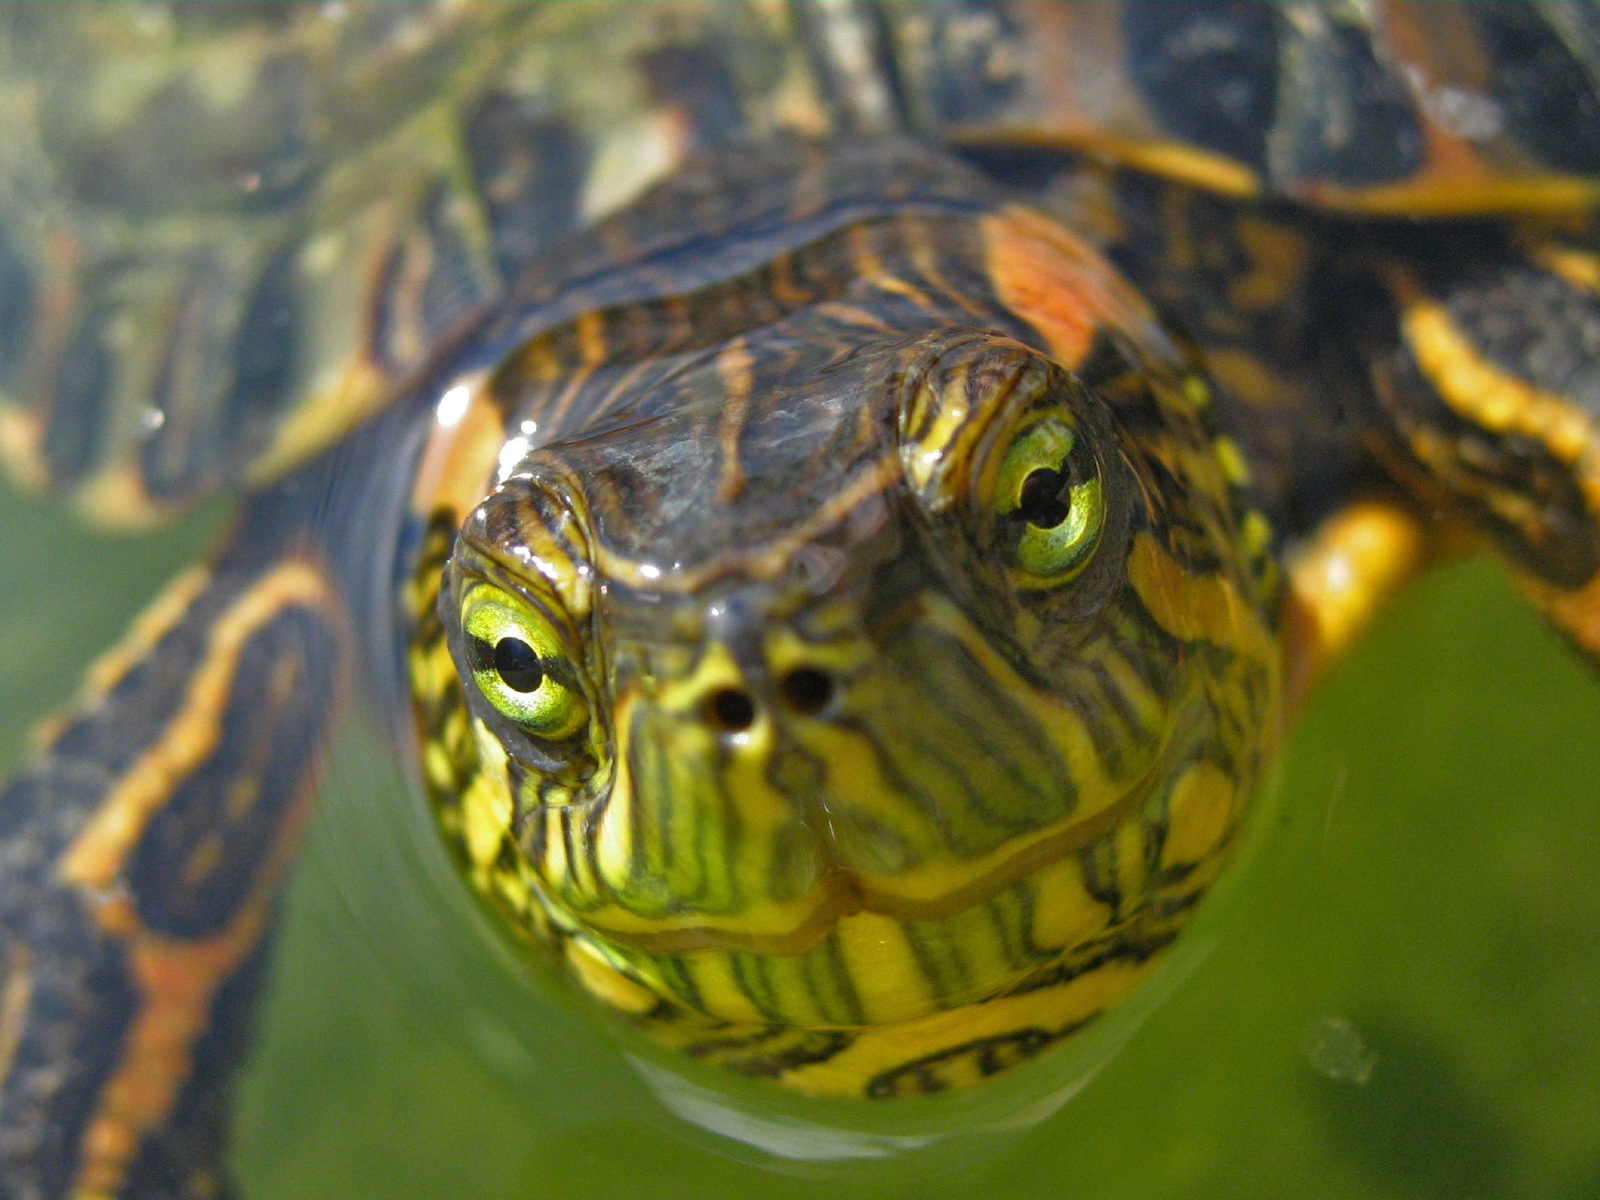 Free download wallpaper Turtles, Animal, Turtle on your PC desktop